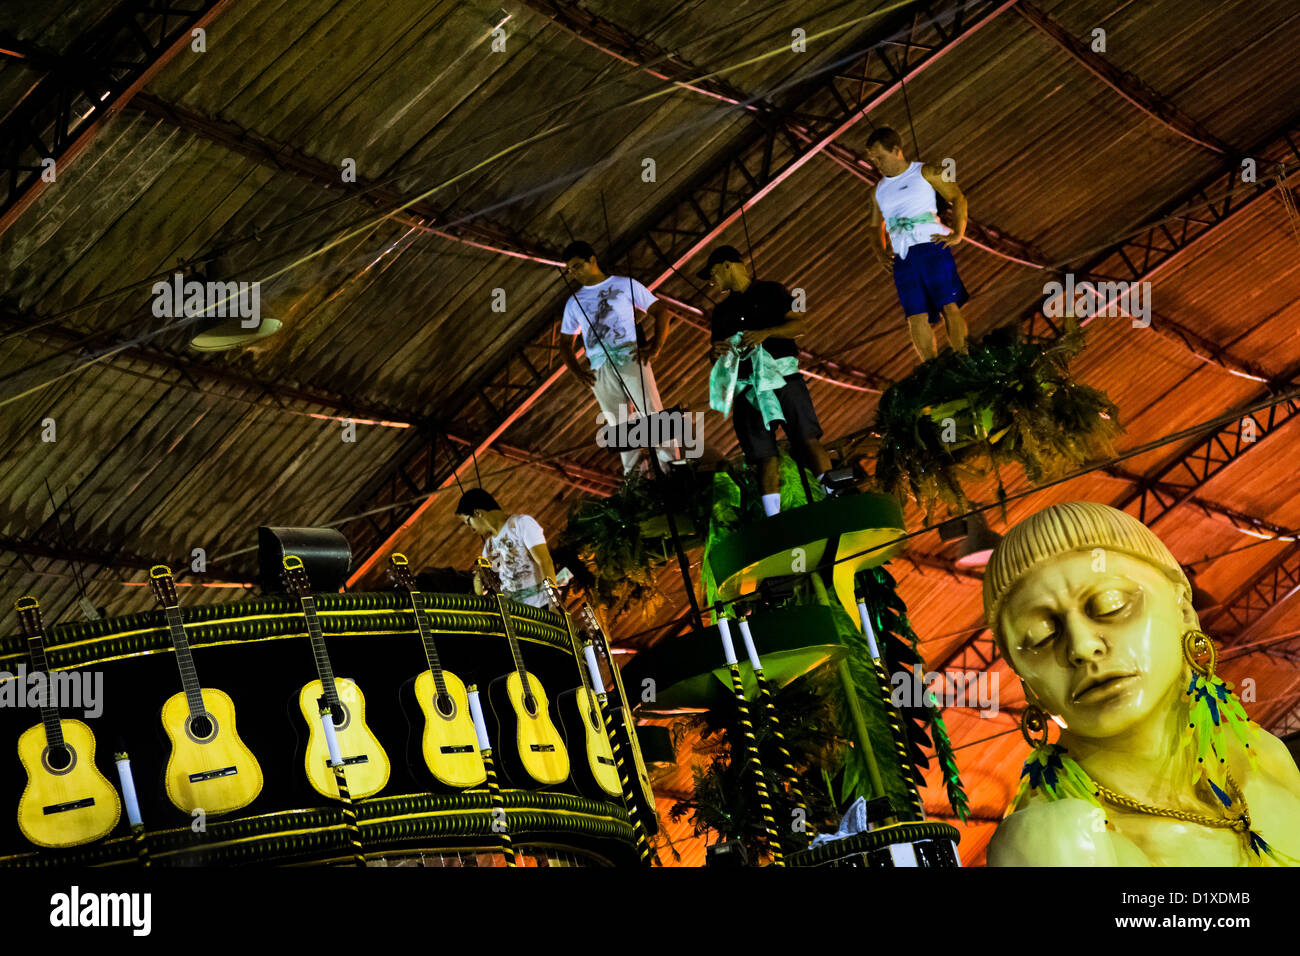 Les membres de l'école de samba tester la capacité de transporter un flottement dans l'atelier du Carnaval à Rio de Janeiro, Brésil. Banque D'Images